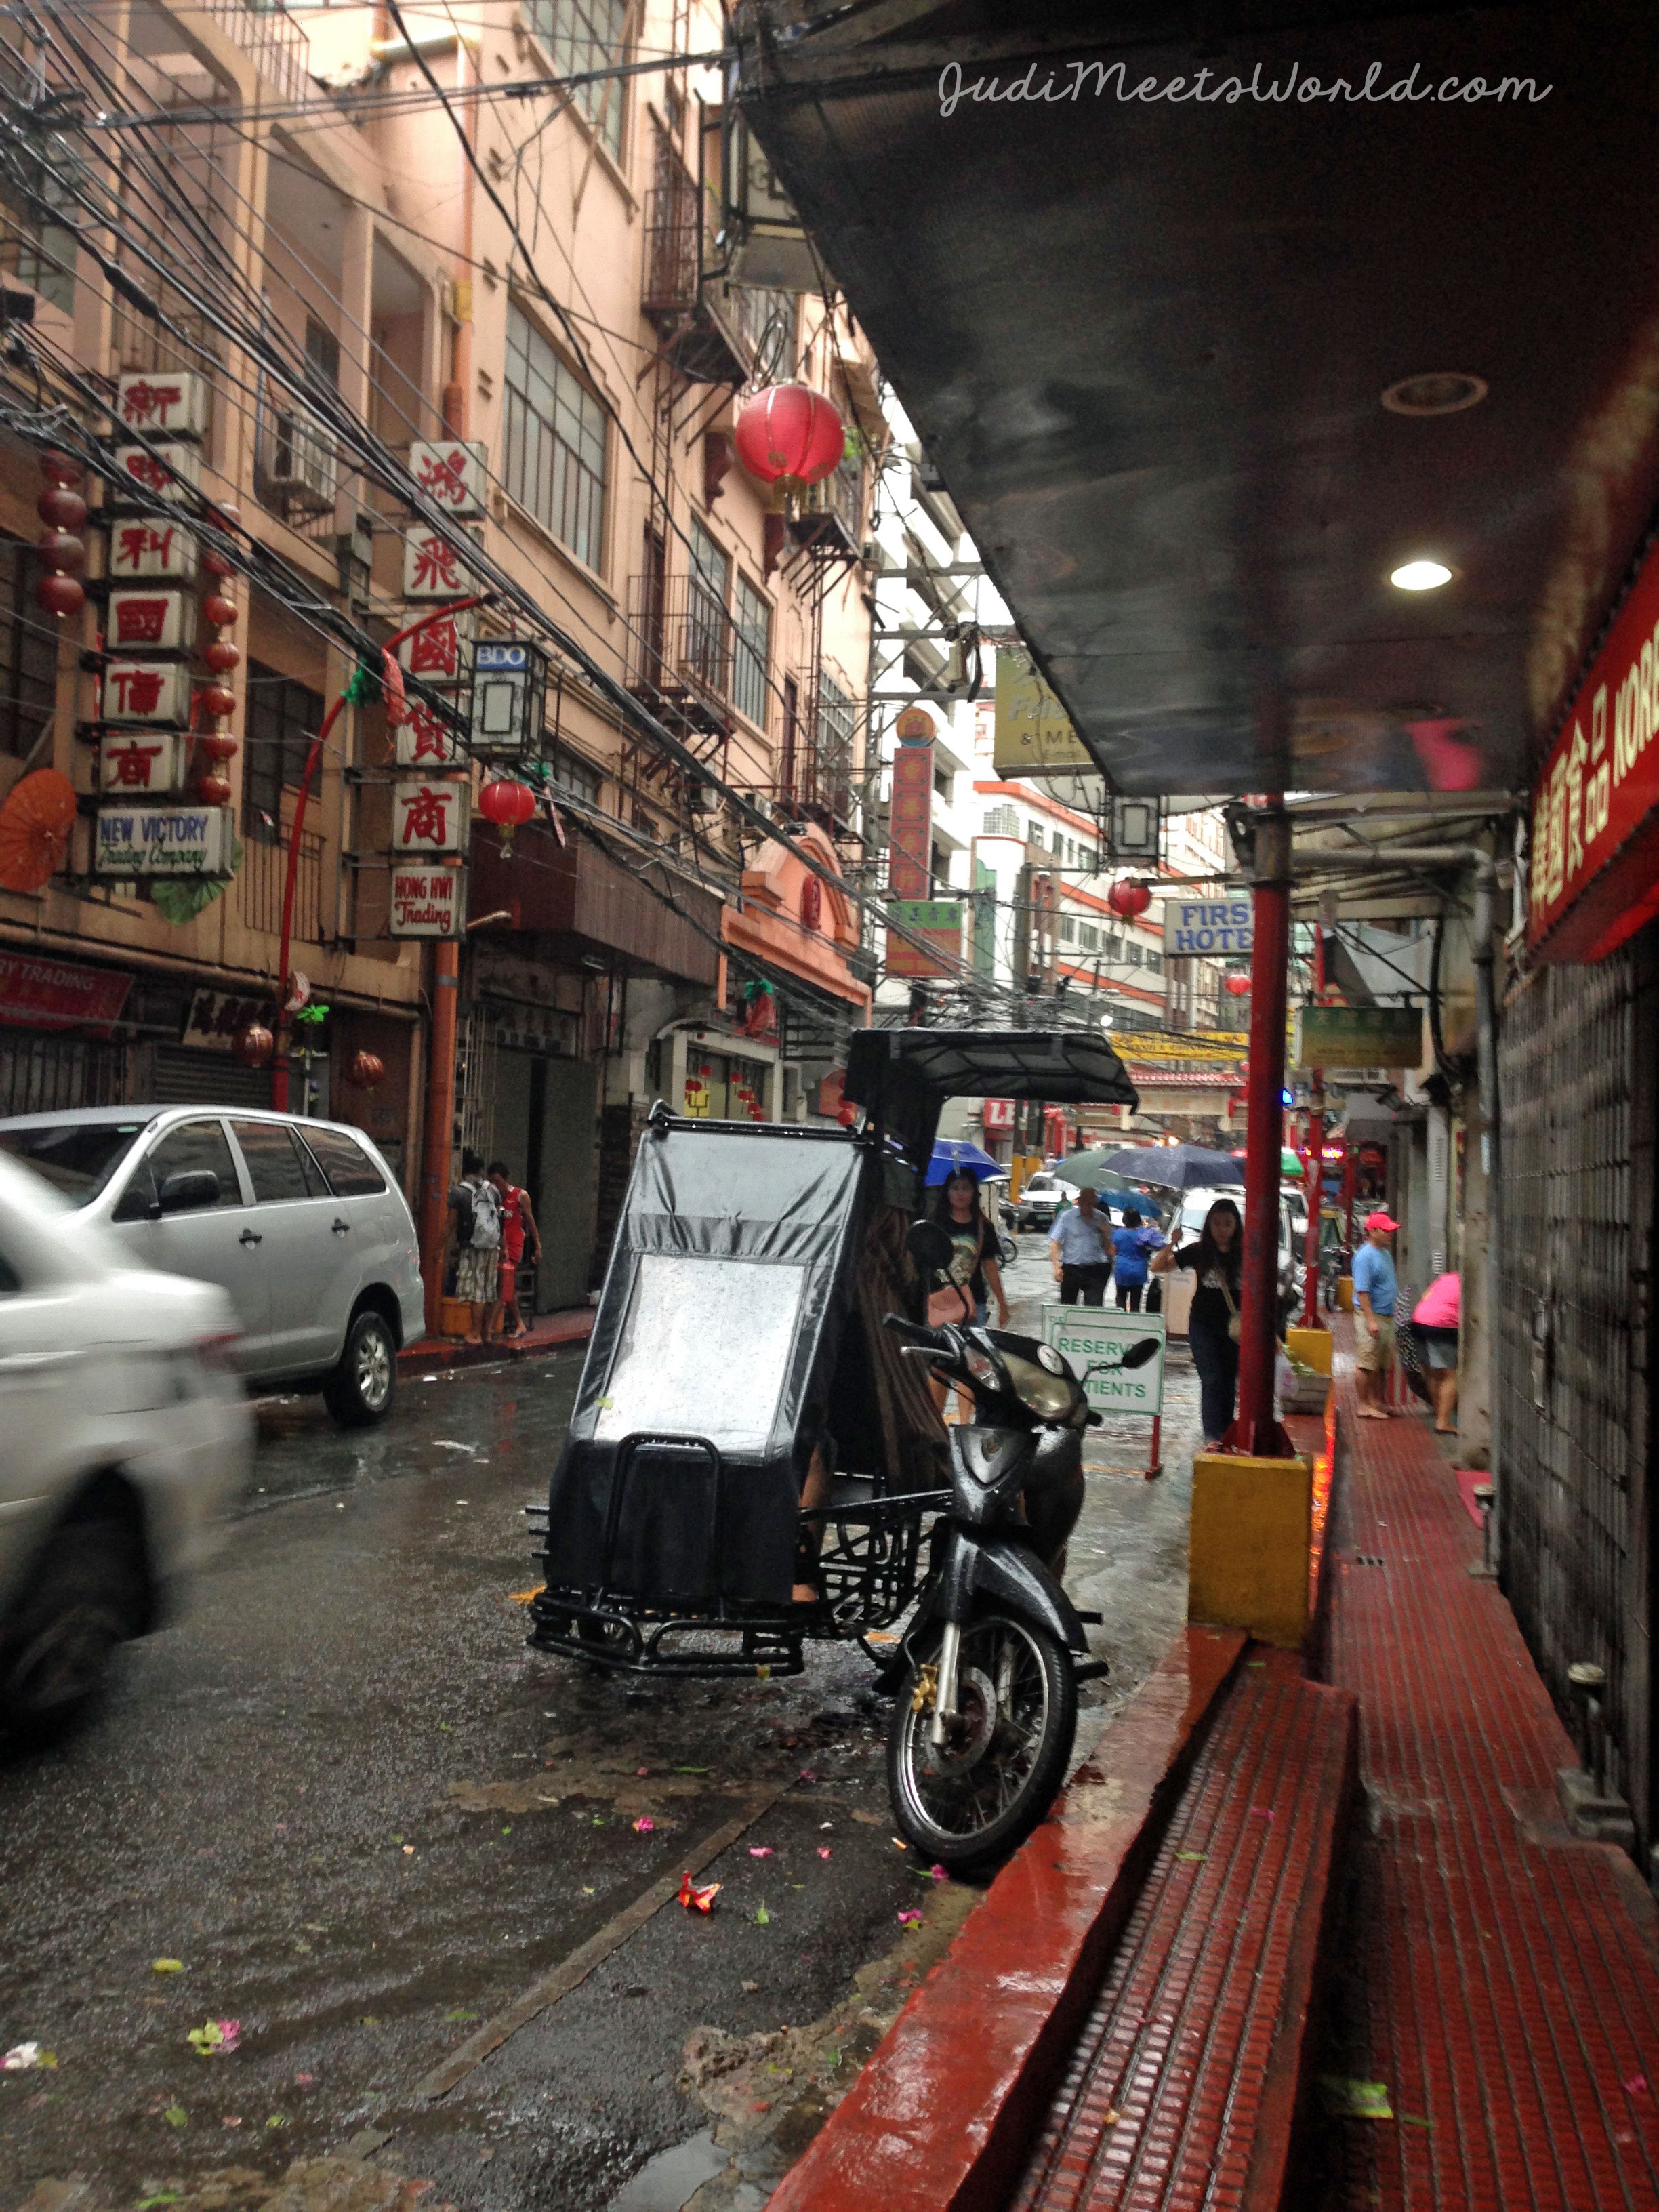 Meet Manila's Chinatown.